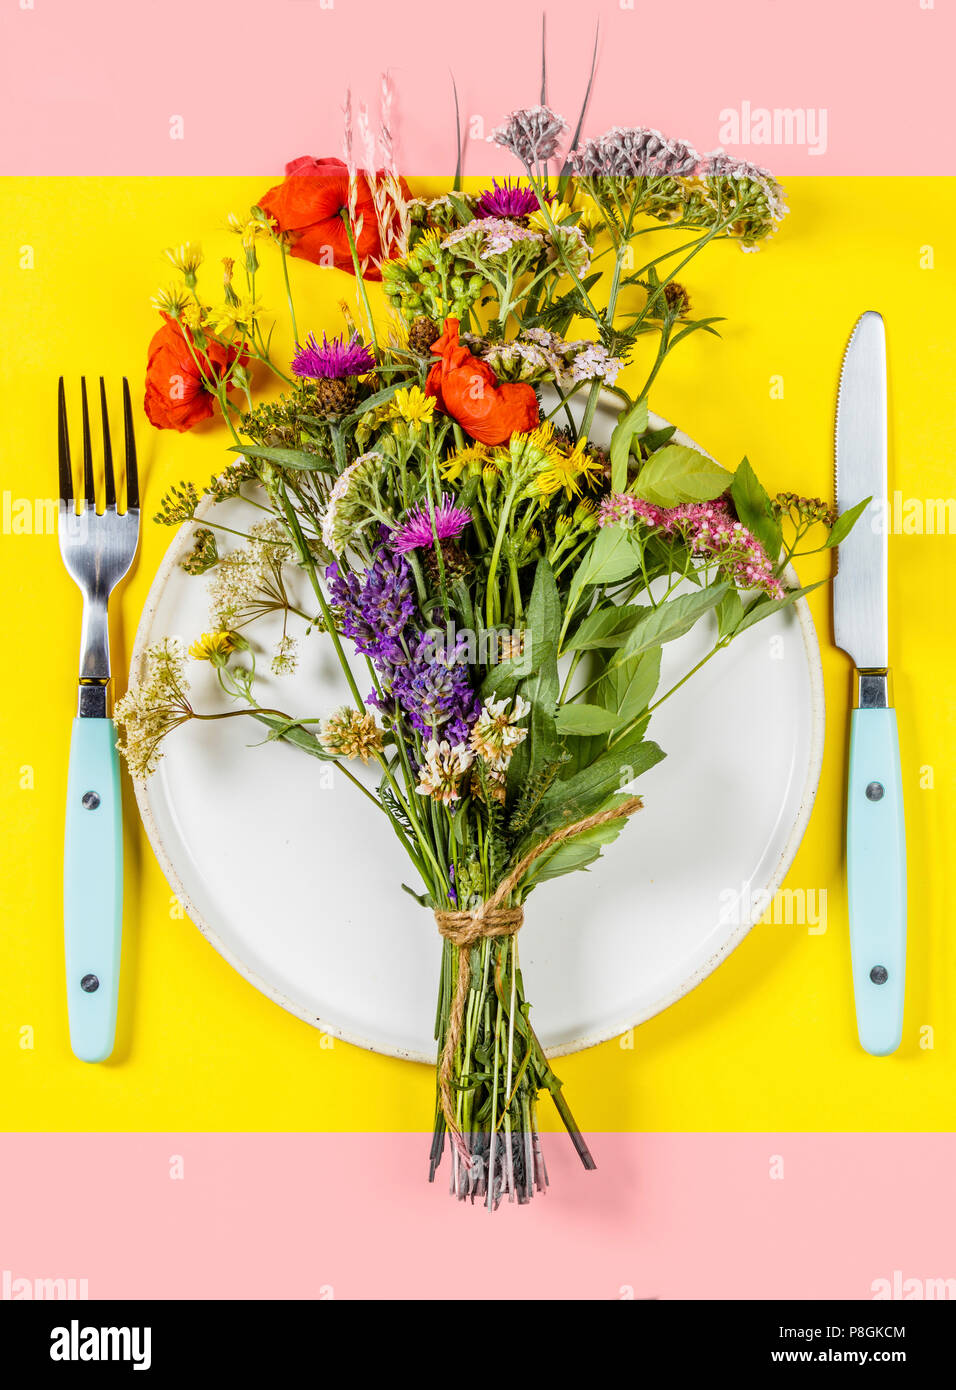 Flach von Wild Flower Bouquet auf weiße Platte. Sauber Essen, Paleo, biohacking, Kräutermedizin Konzept Stockfoto